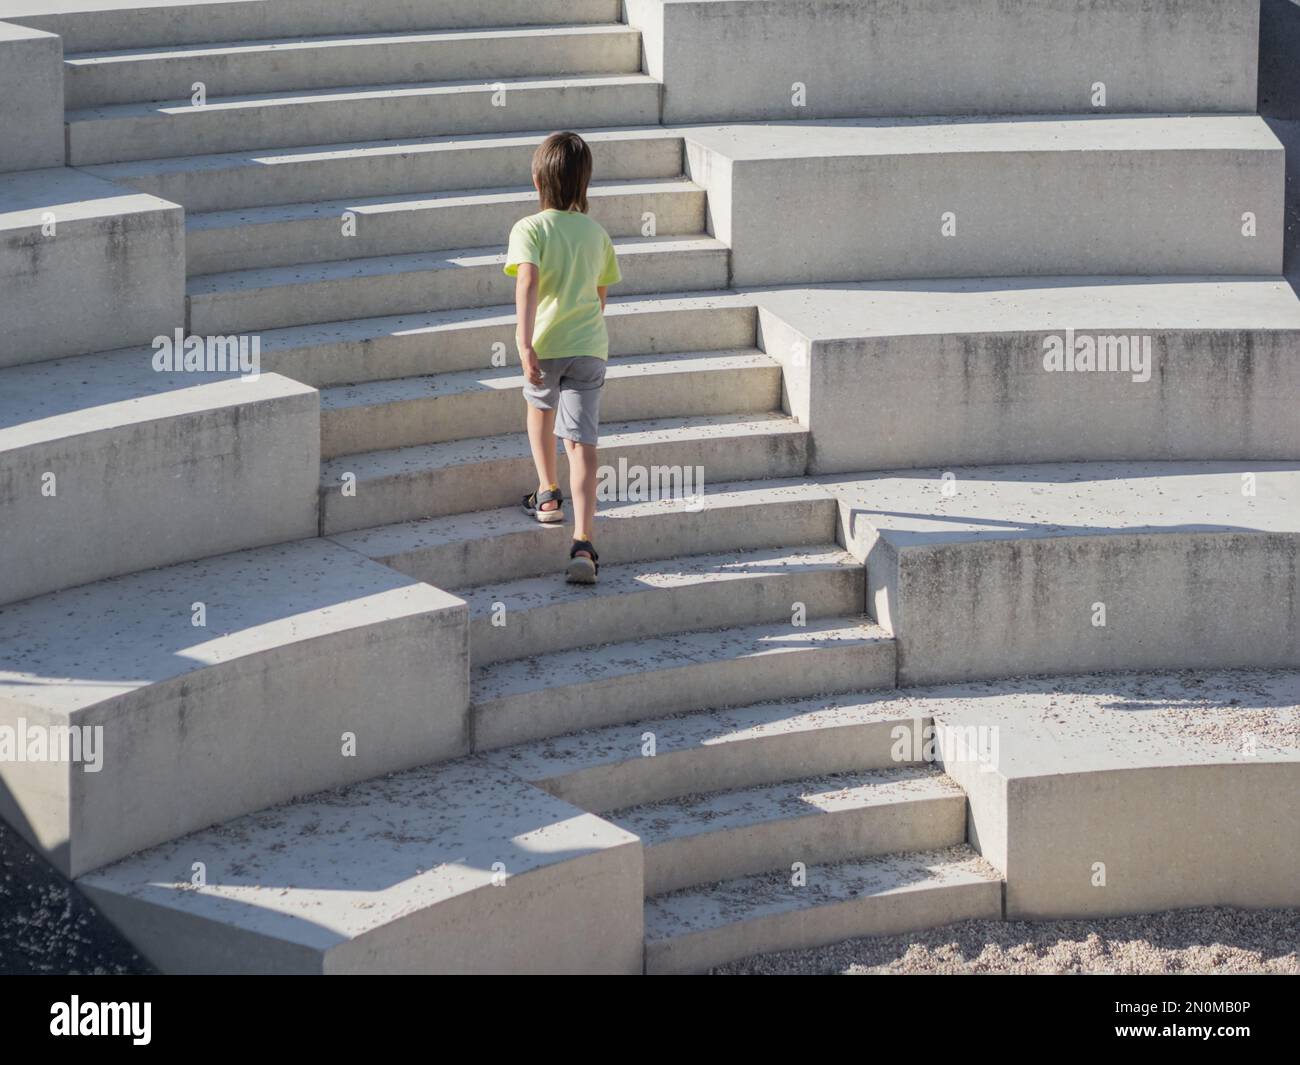 Vista posteriore del ragazzo che sale sulle scale di cemento assolate. Kid sta lasciando questo posto e sta arrivando a qualcosa di nuovo. Foto Stock